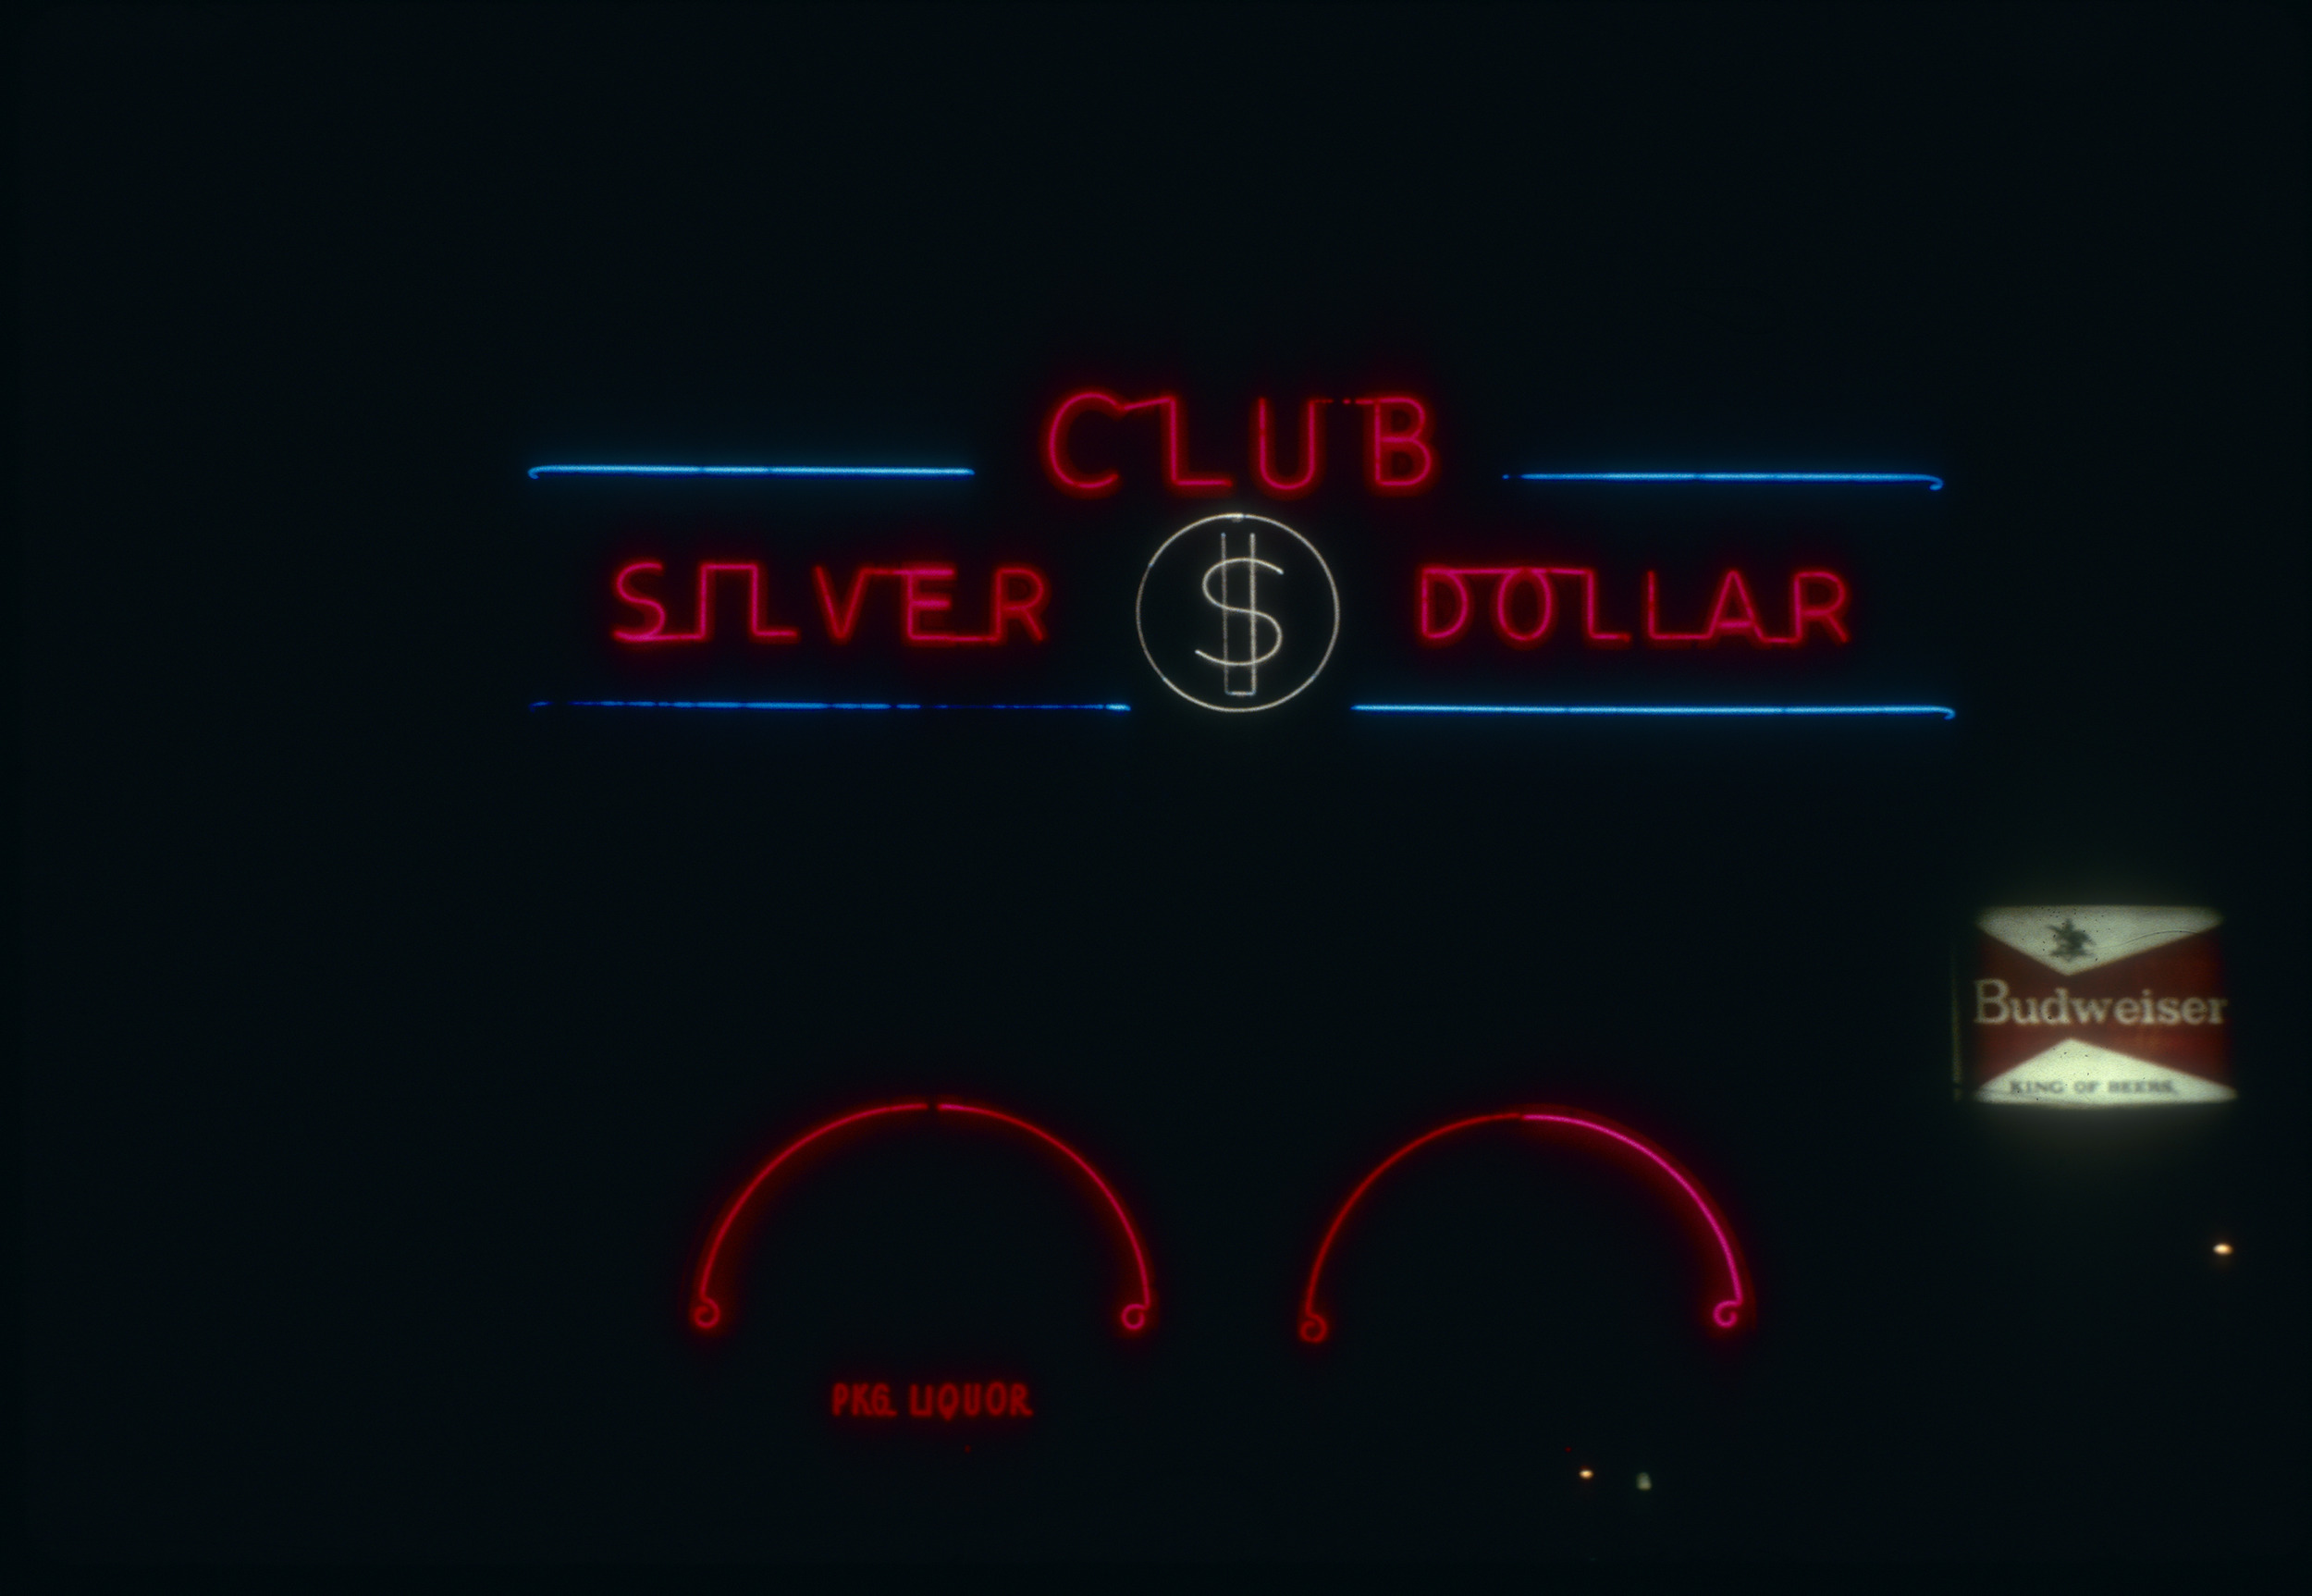 Slide of the Silver Dollar Club, Elko, Nevada, 1986